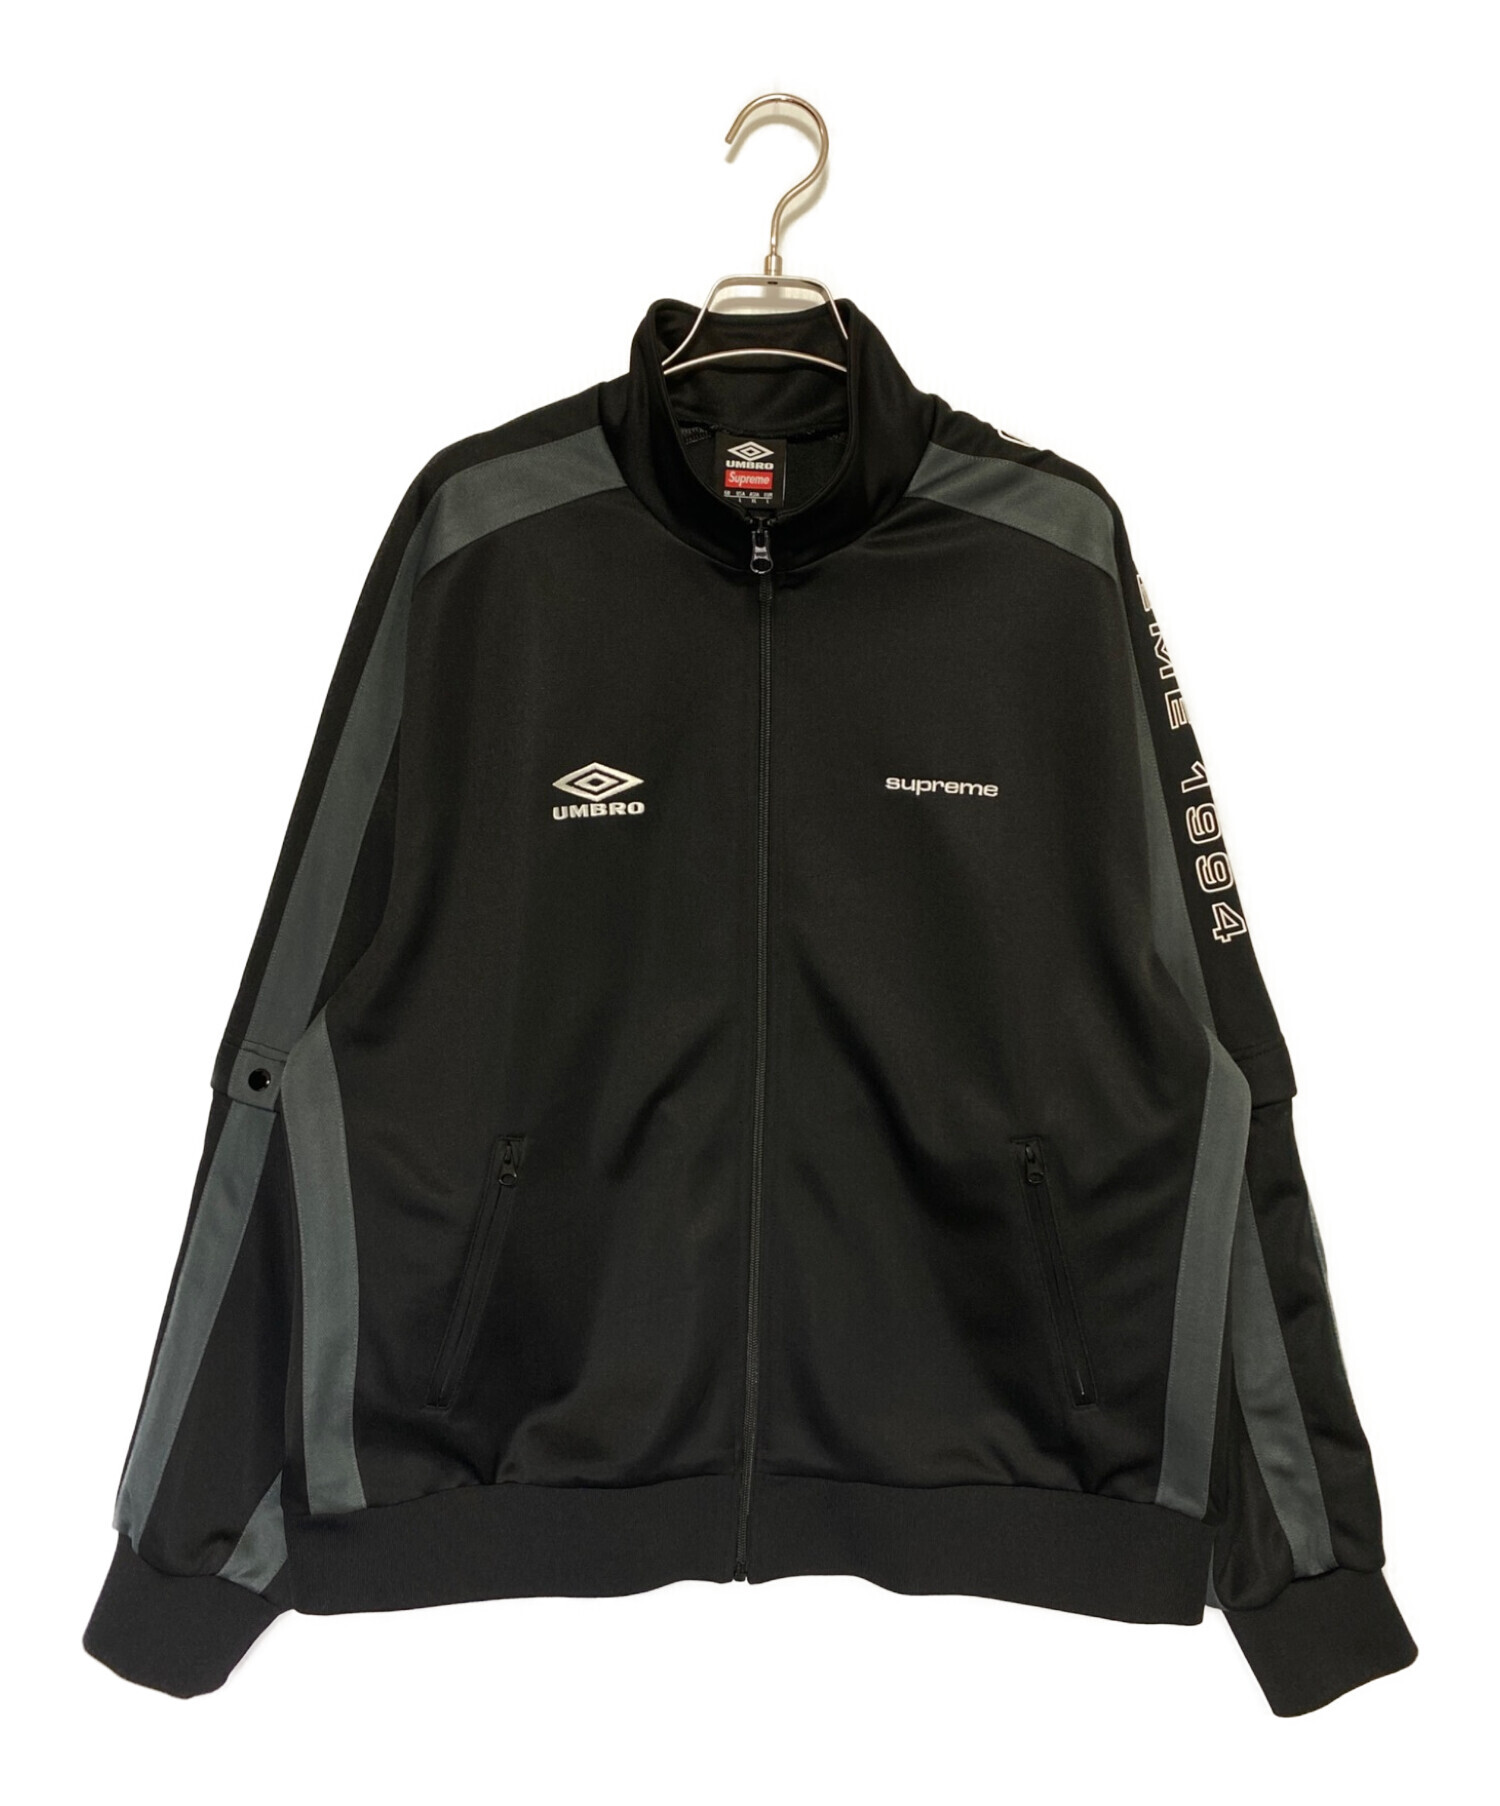 SUPREME (シュプリーム) UMBRO (アンブロ) Snap Sleeve Jacket ブラック サイズ:XL